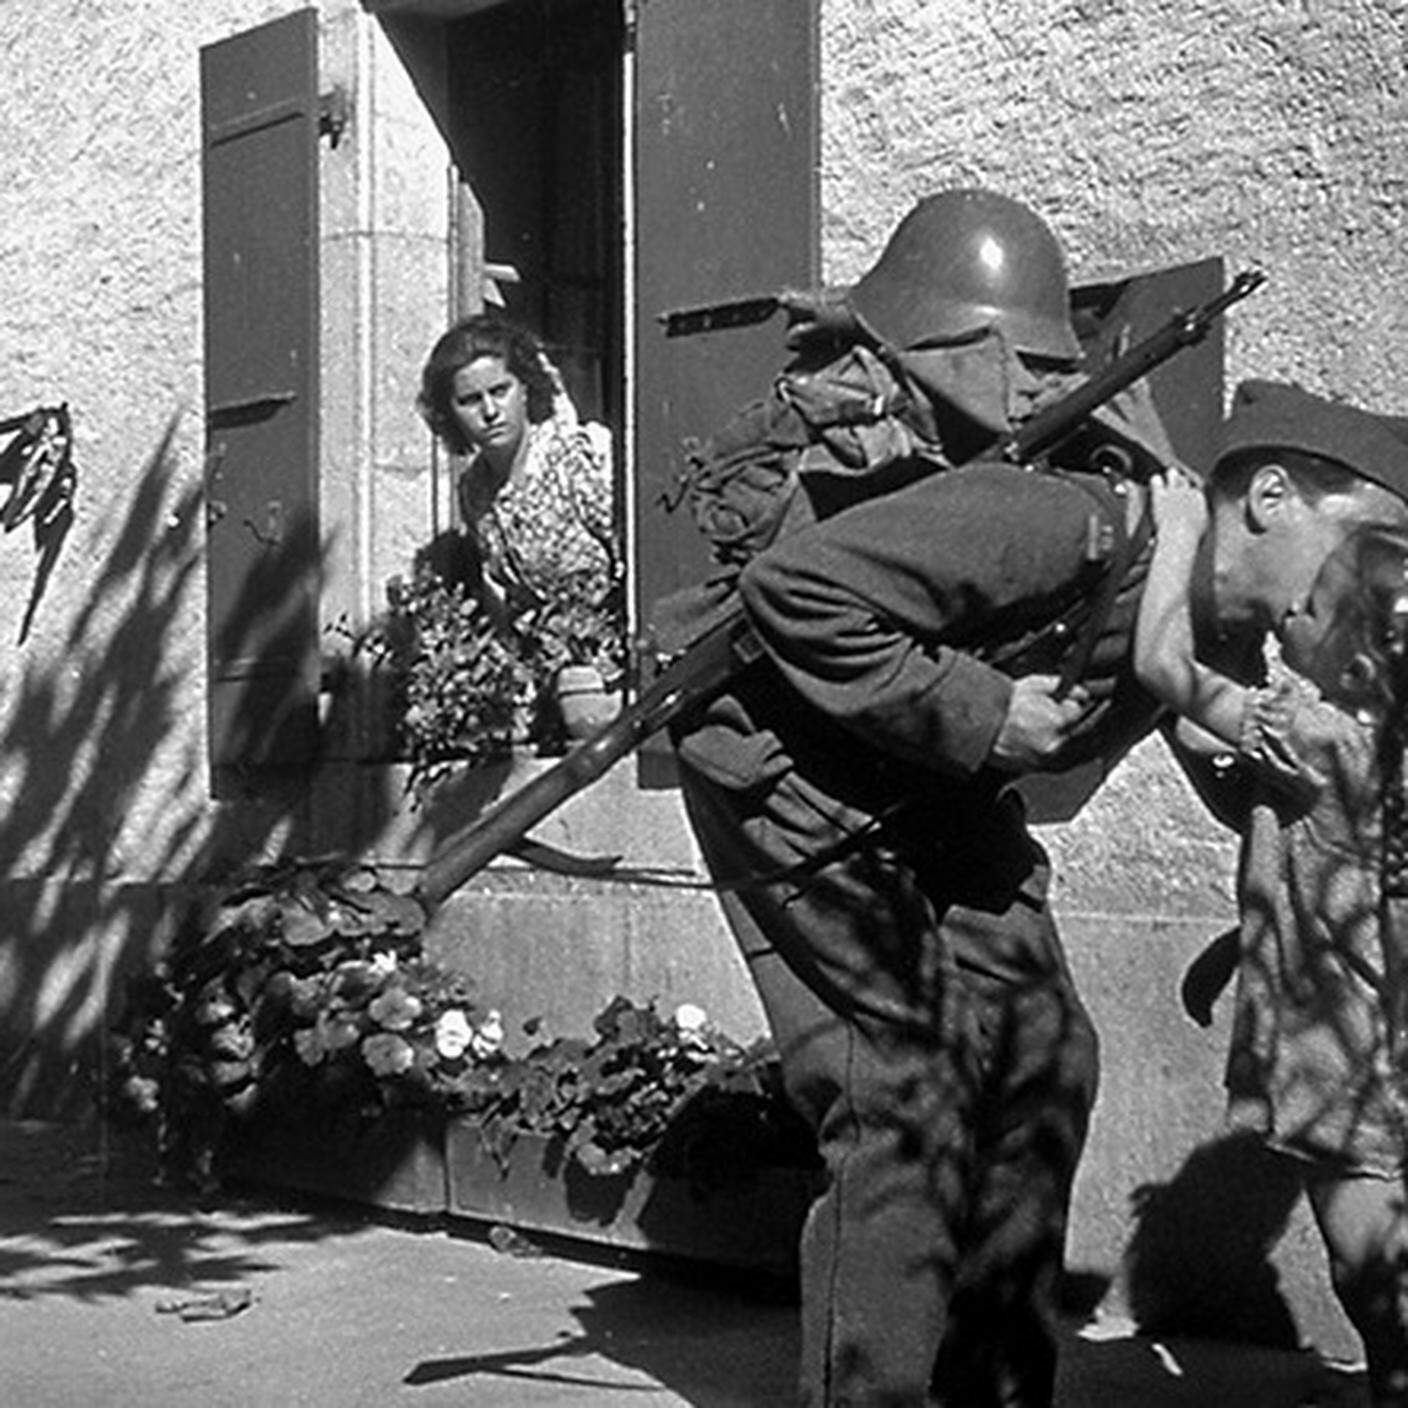 Un soldato parte per il servizio attivo; immagine tratta da un reportage del Cinegiornale svizzero, dedicato alla mobilitazione dell’esercito durante la Seconda guerra mondiale